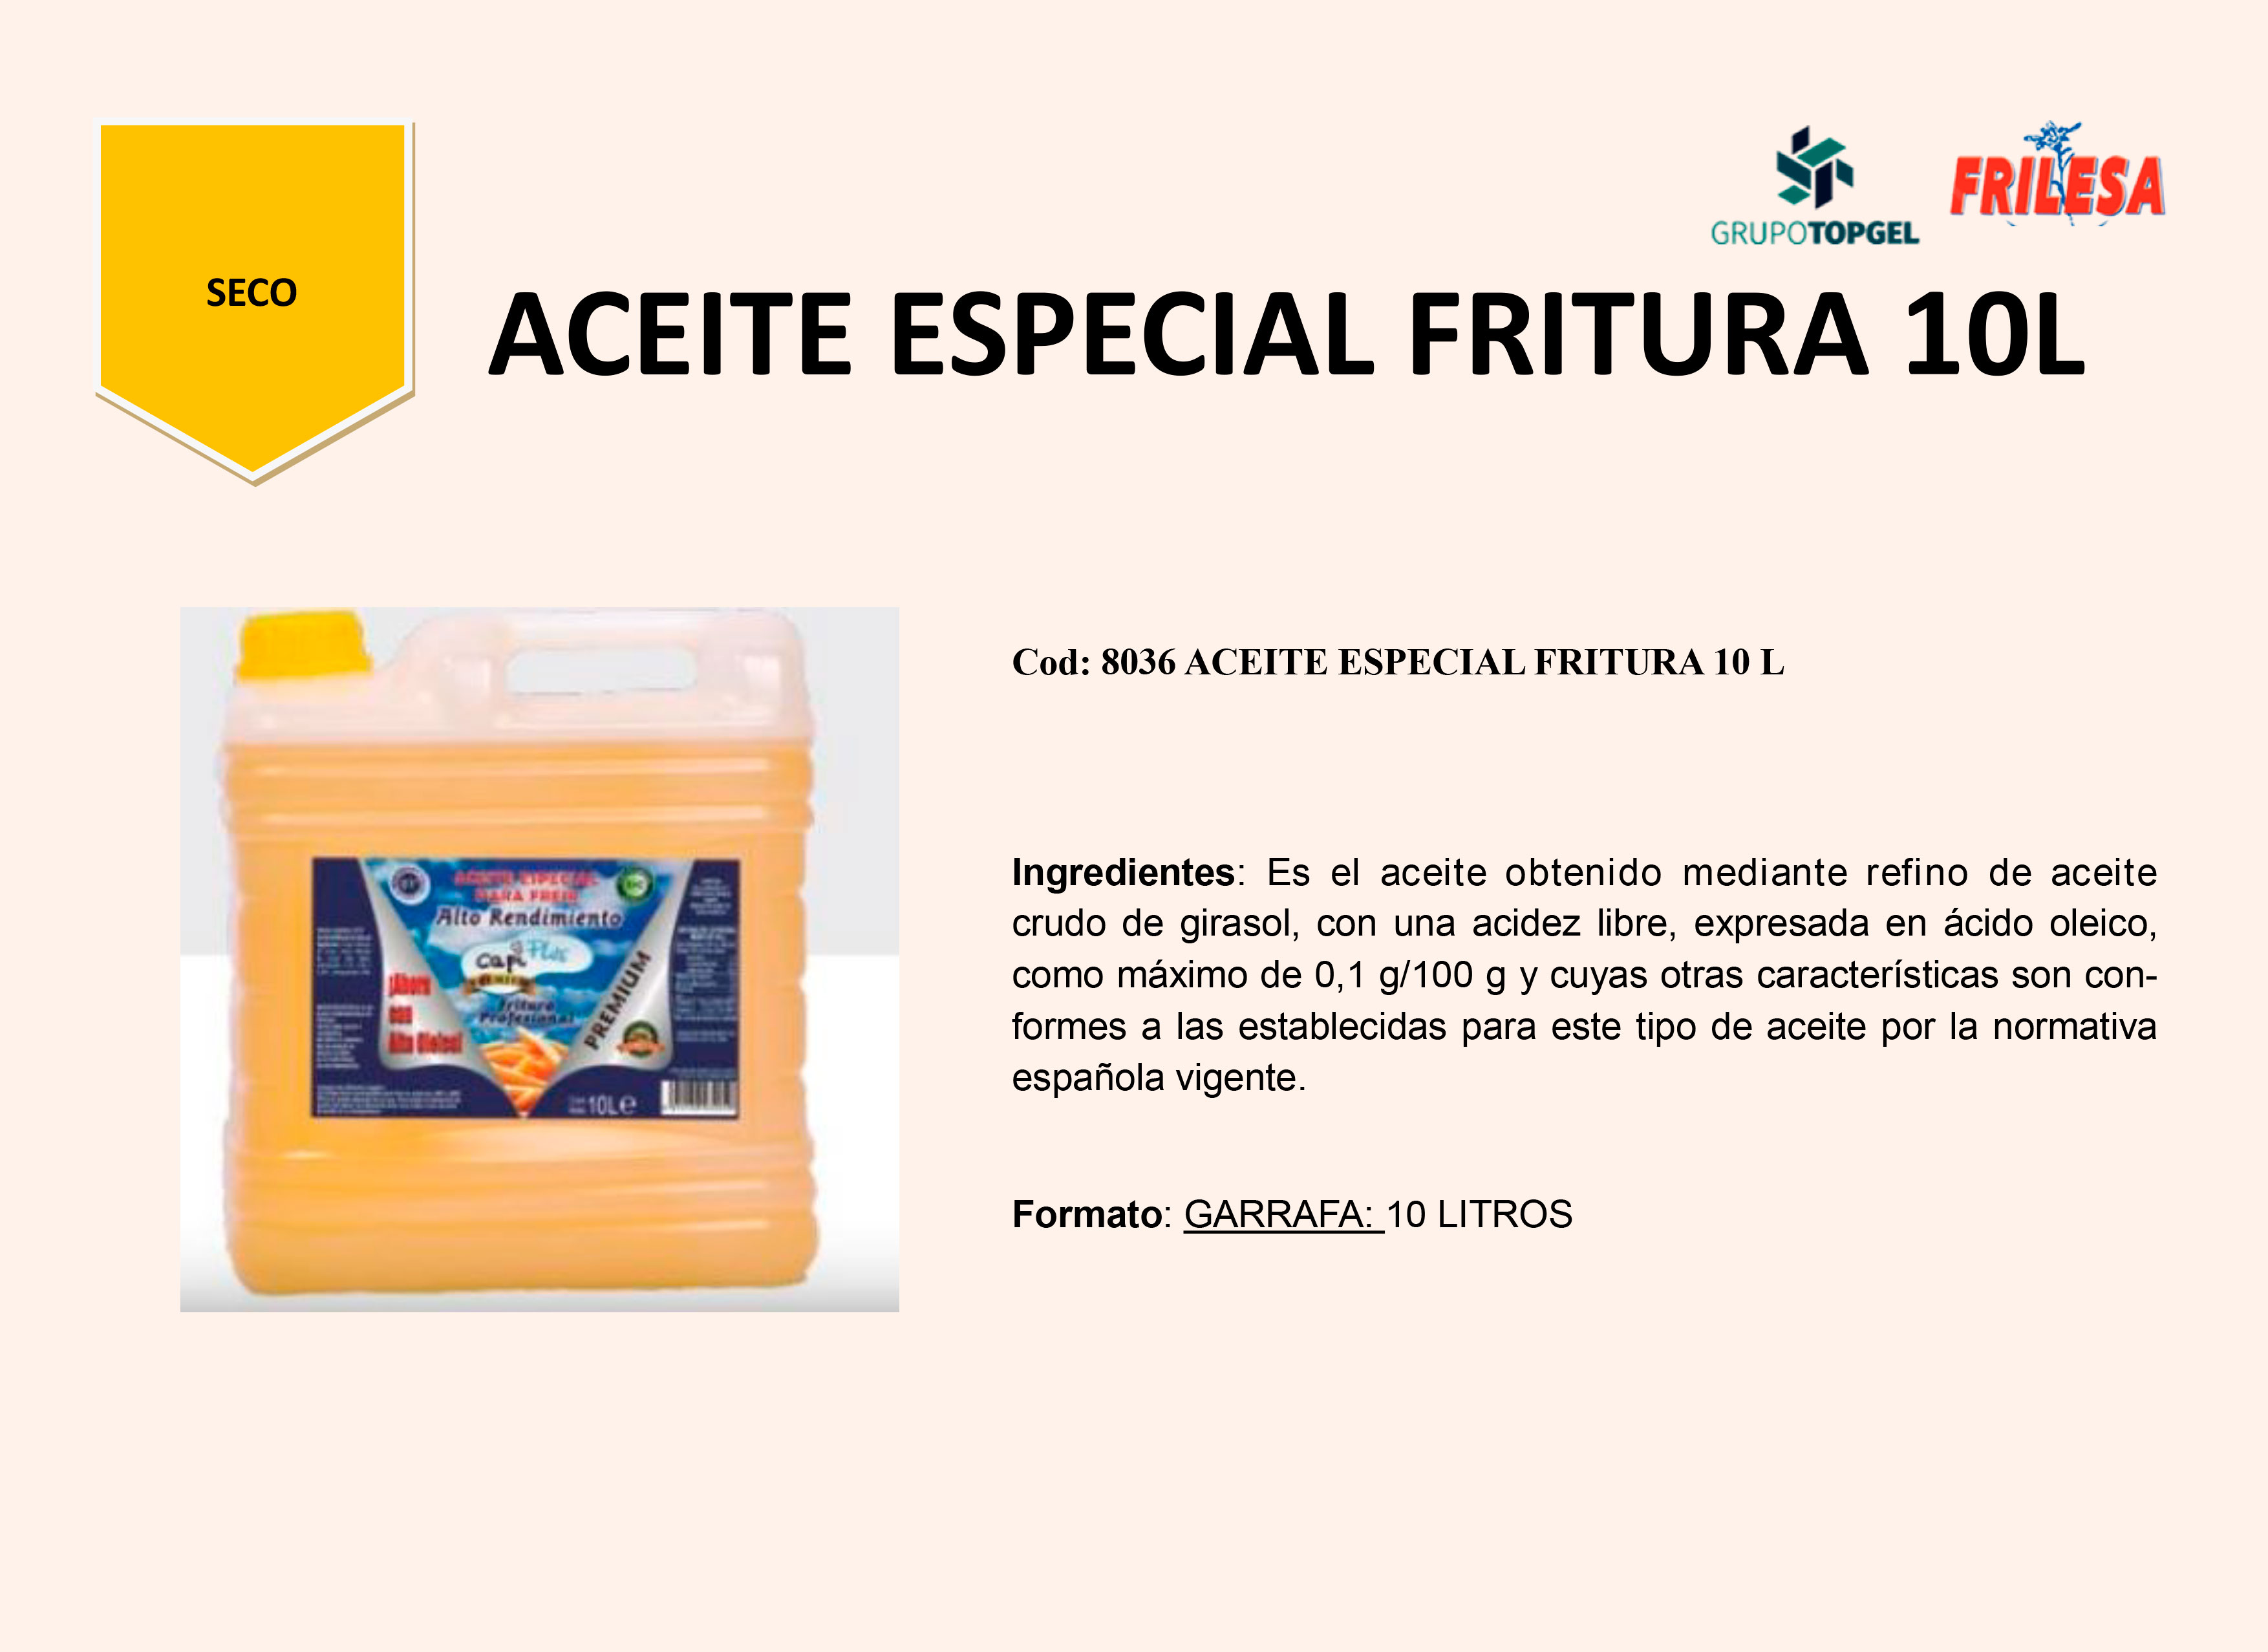 ACEITE-ESPECIAL-FRITURA-10-L